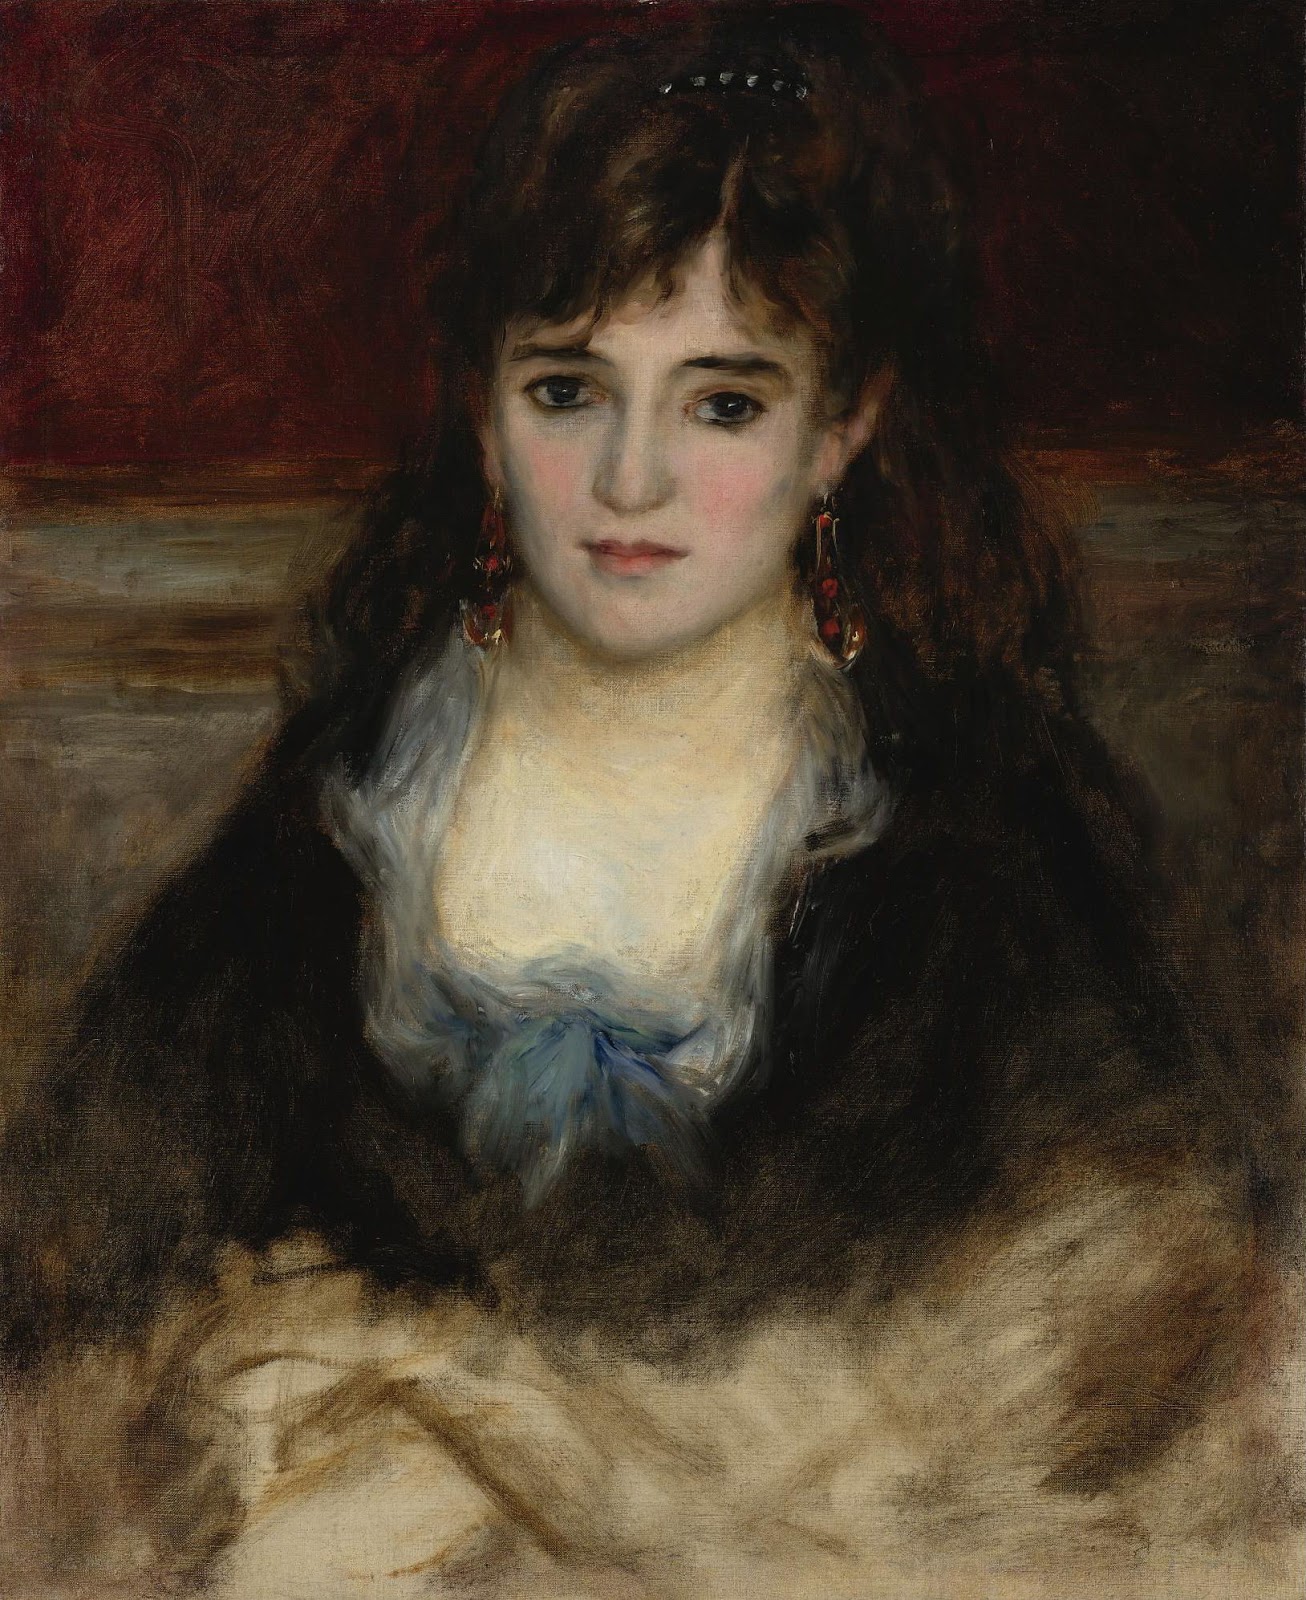 Pierre+Auguste+Renoir-1841-1-19 (859).jpg